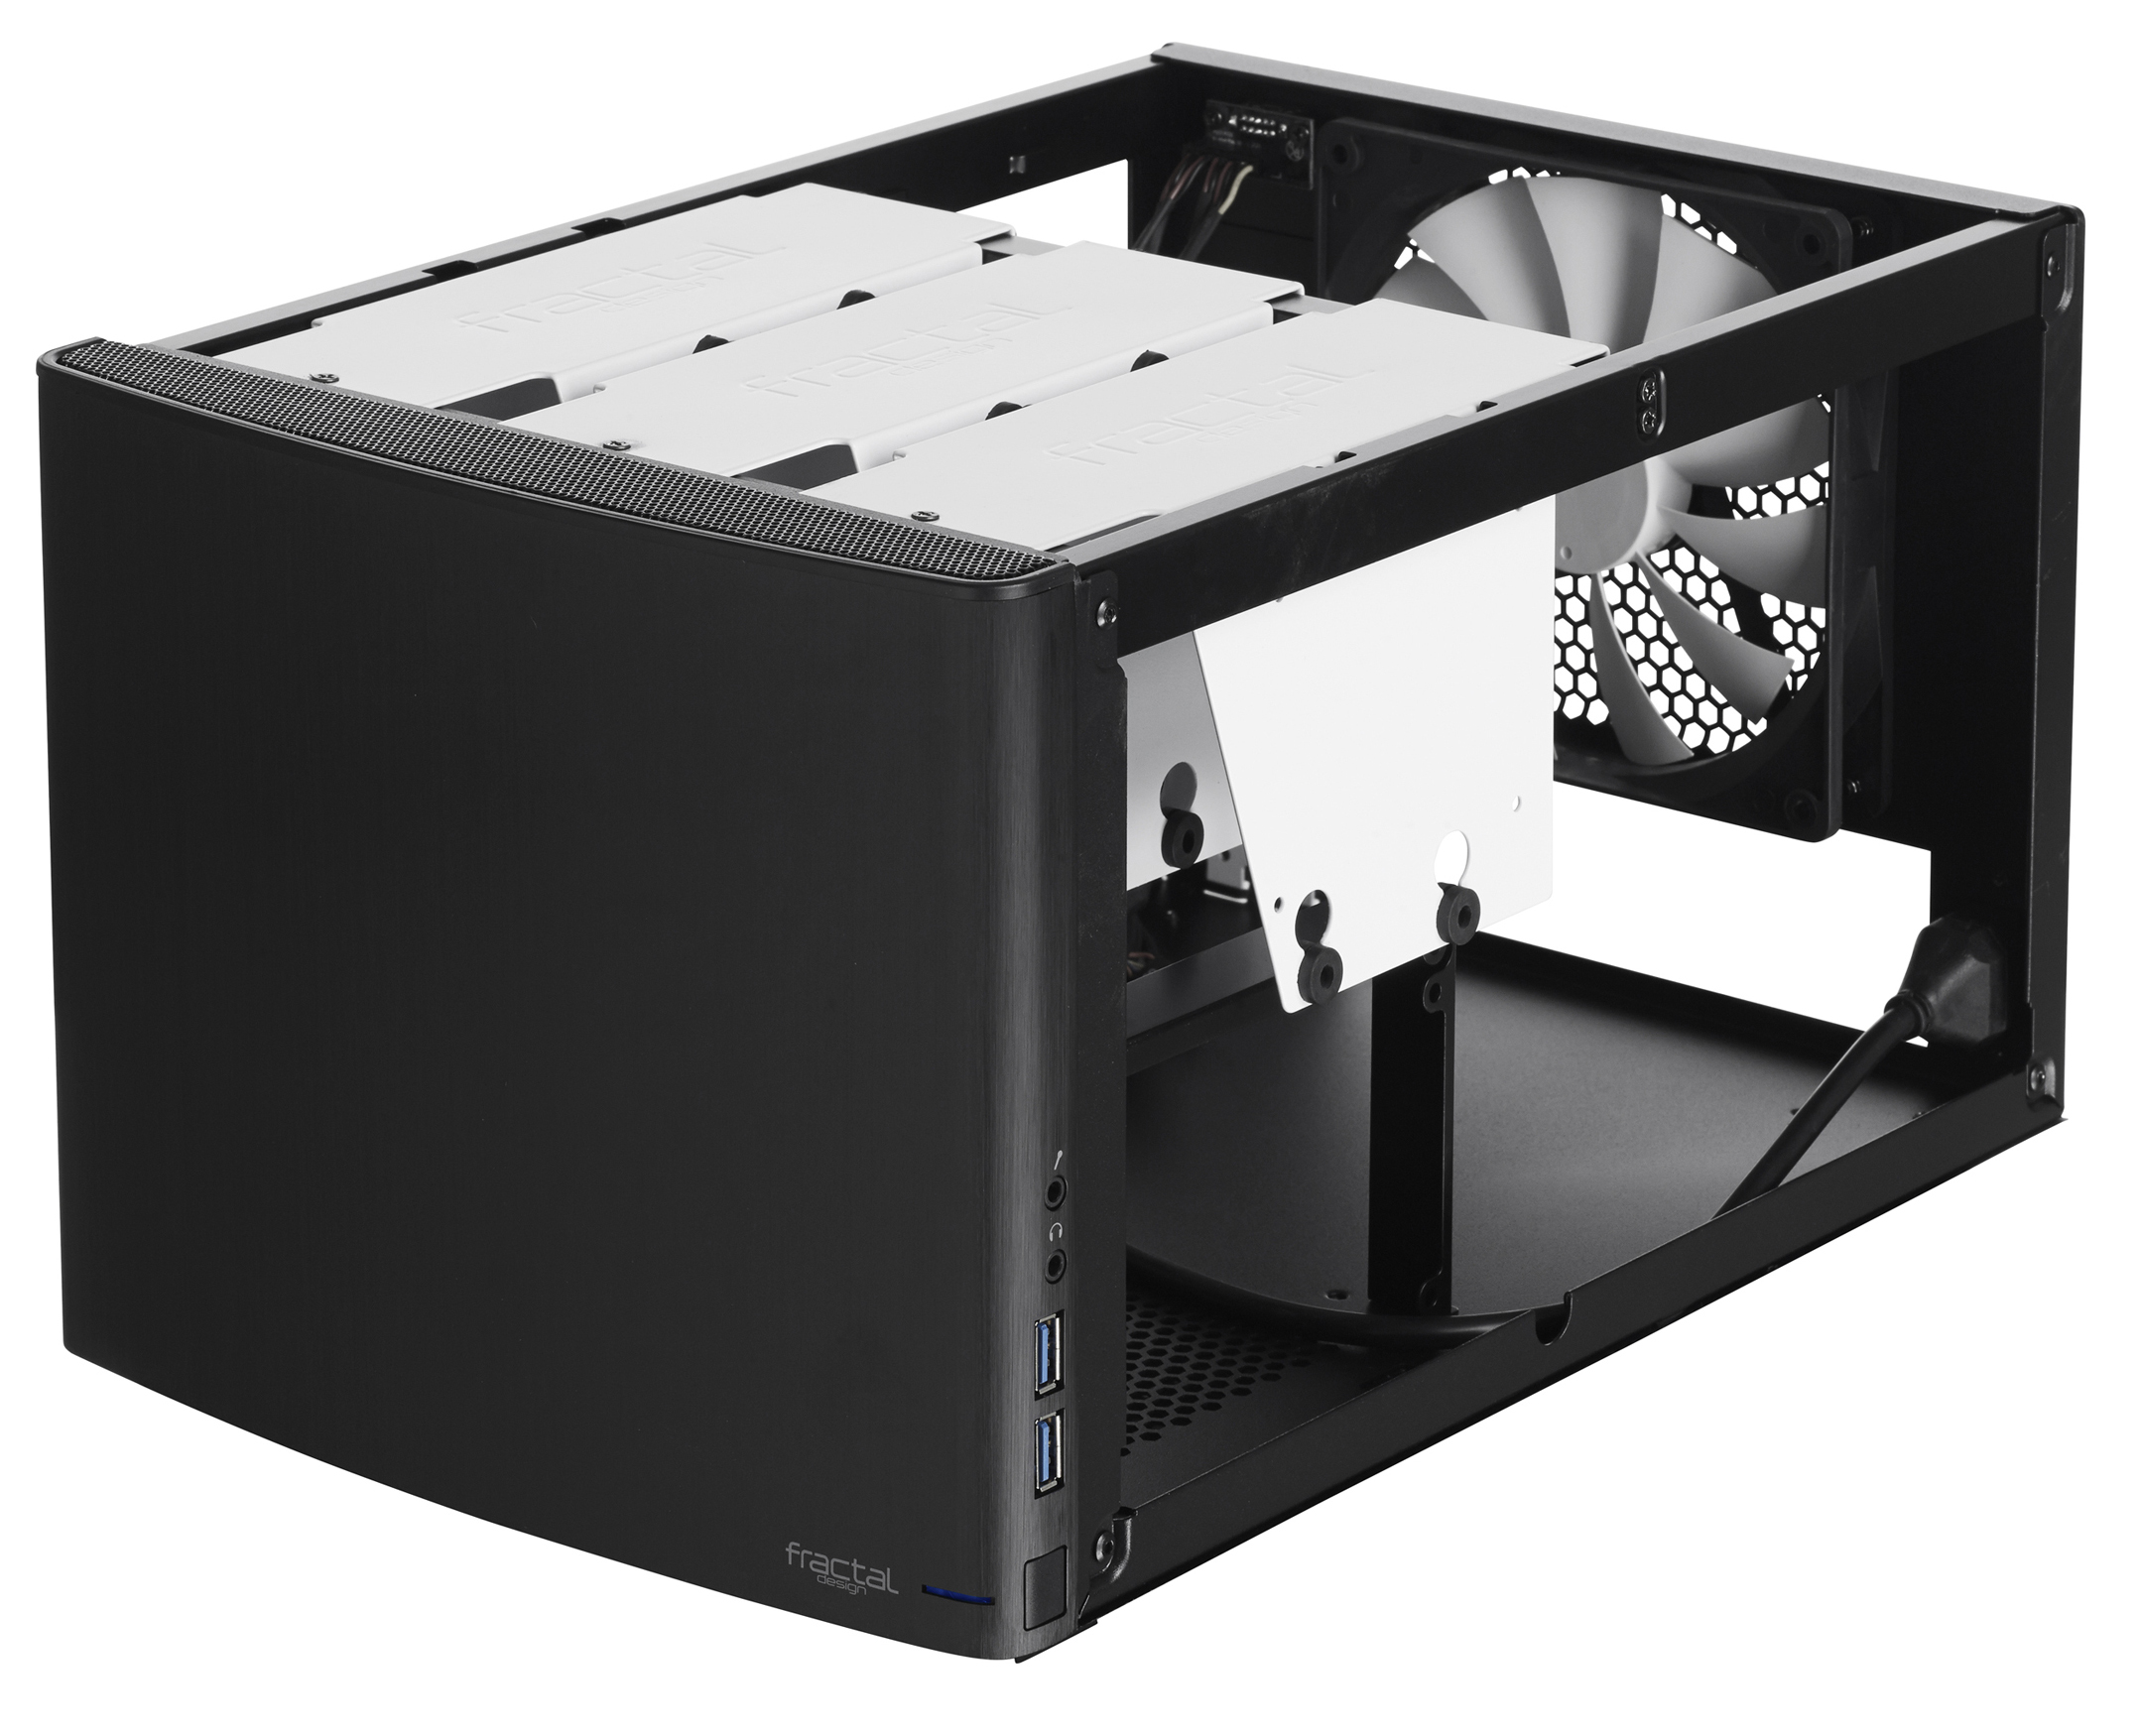 Fractal Design - Caixa Mini-ITX Fractal Design Node 304 black